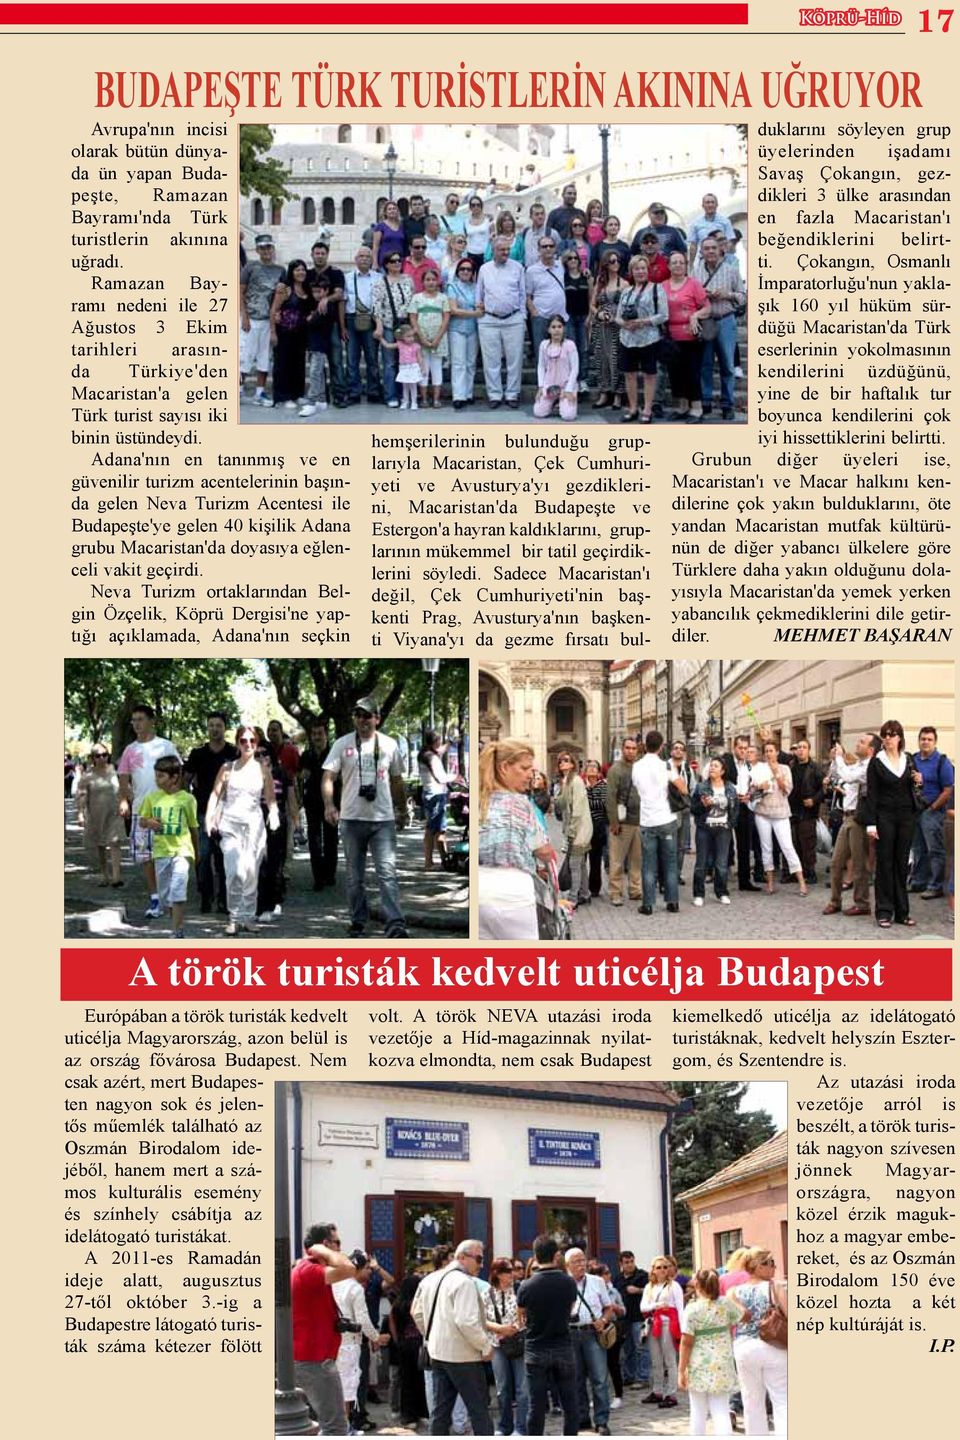 Adana'nın en tanınmış ve en güvenilir turizm acentelerinin başında gelen Neva Turizm Acentesi ile Budapeşte'ye gelen 40 kişilik Adana grubu Macaristan'da doyasıya eğlenceli vakit geçirdi.